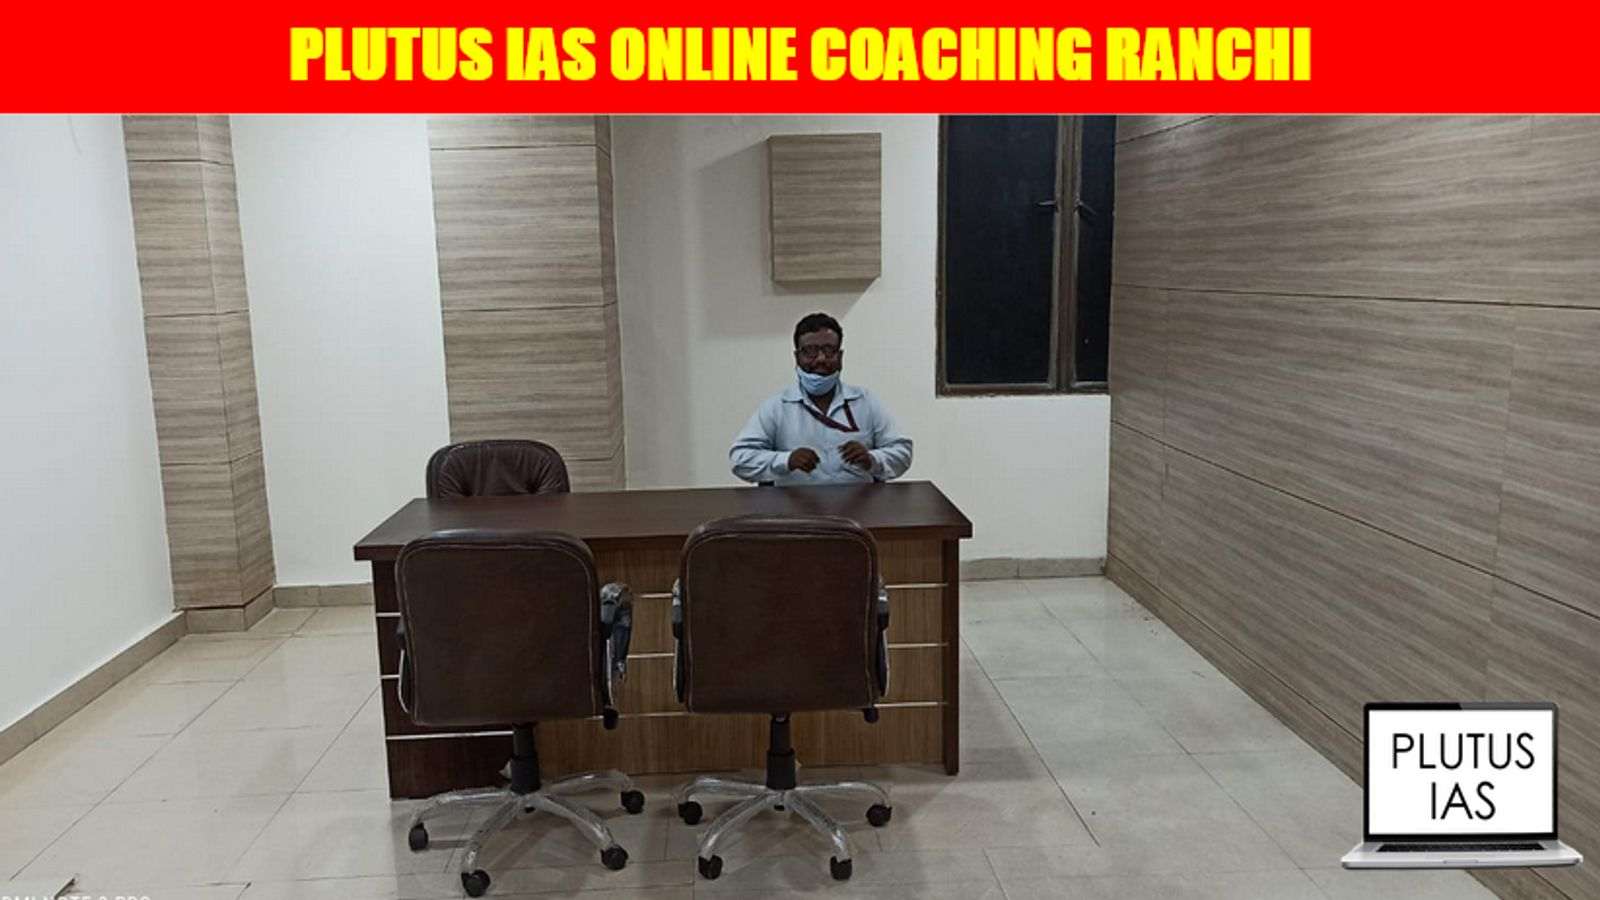 Plutus IAS Online Coaching Ranchi